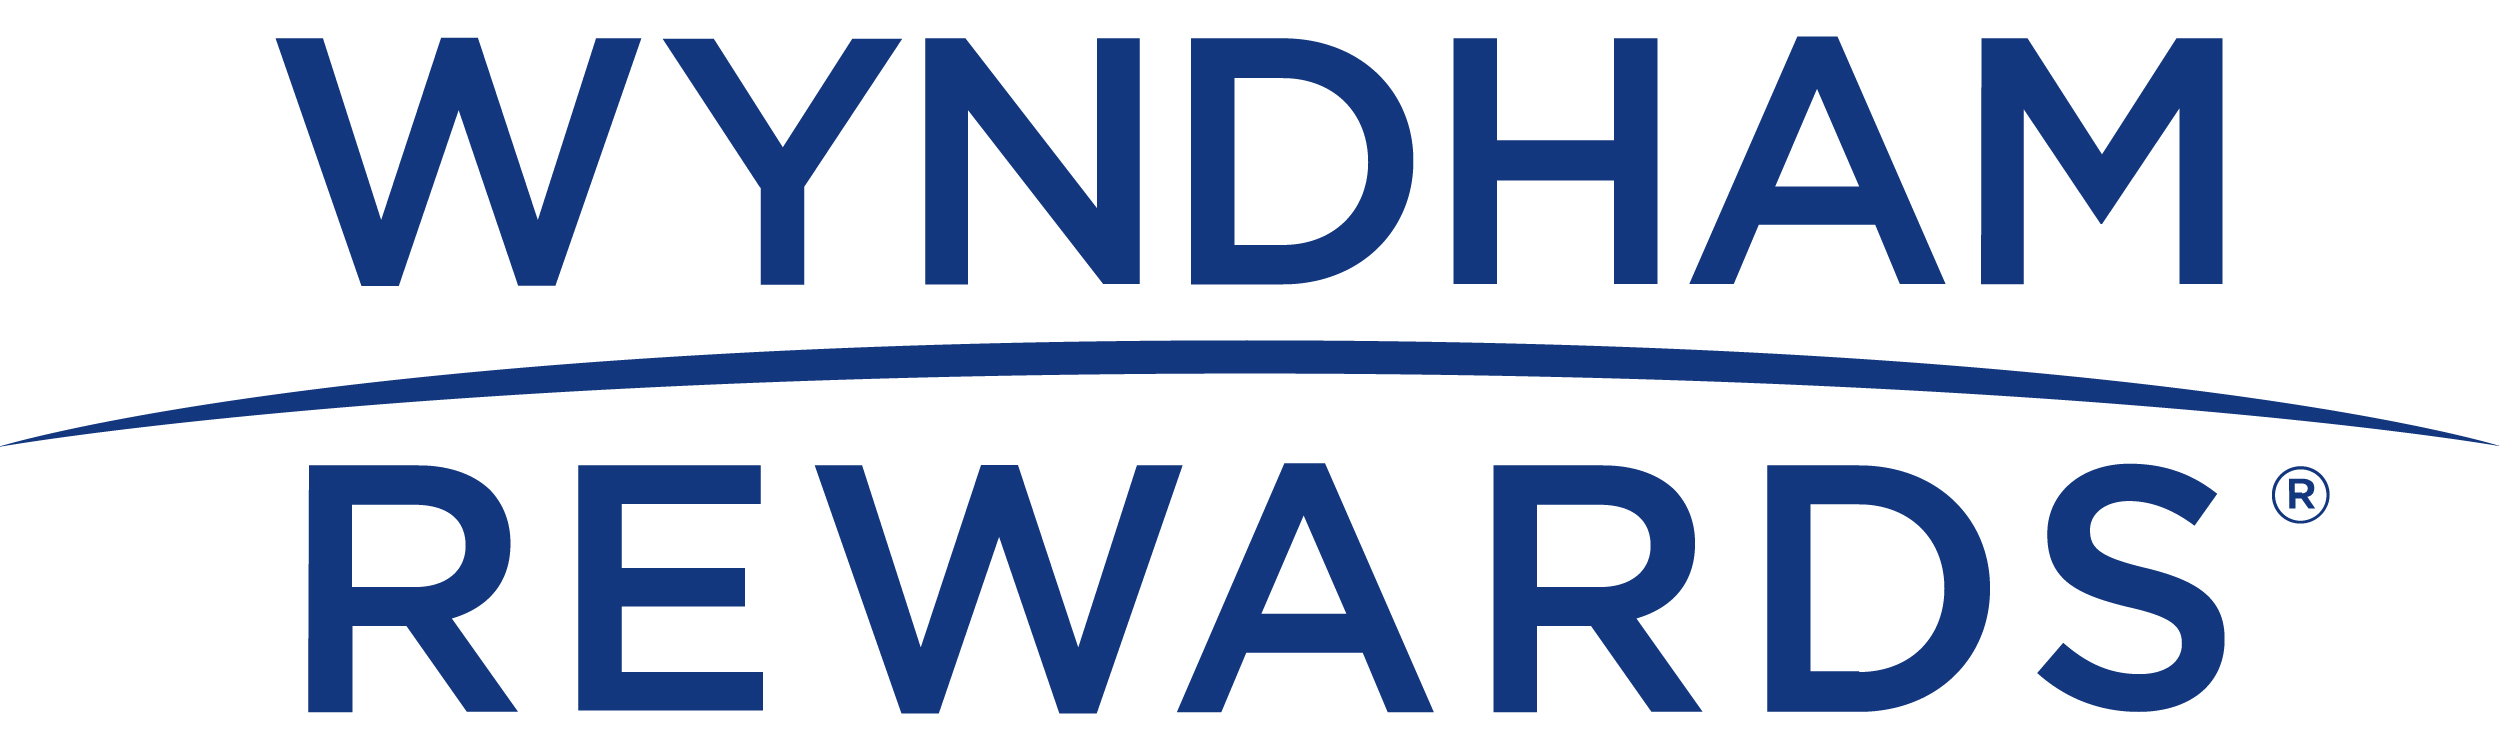 Wyndham Rewards - h-hotels.com - Official website